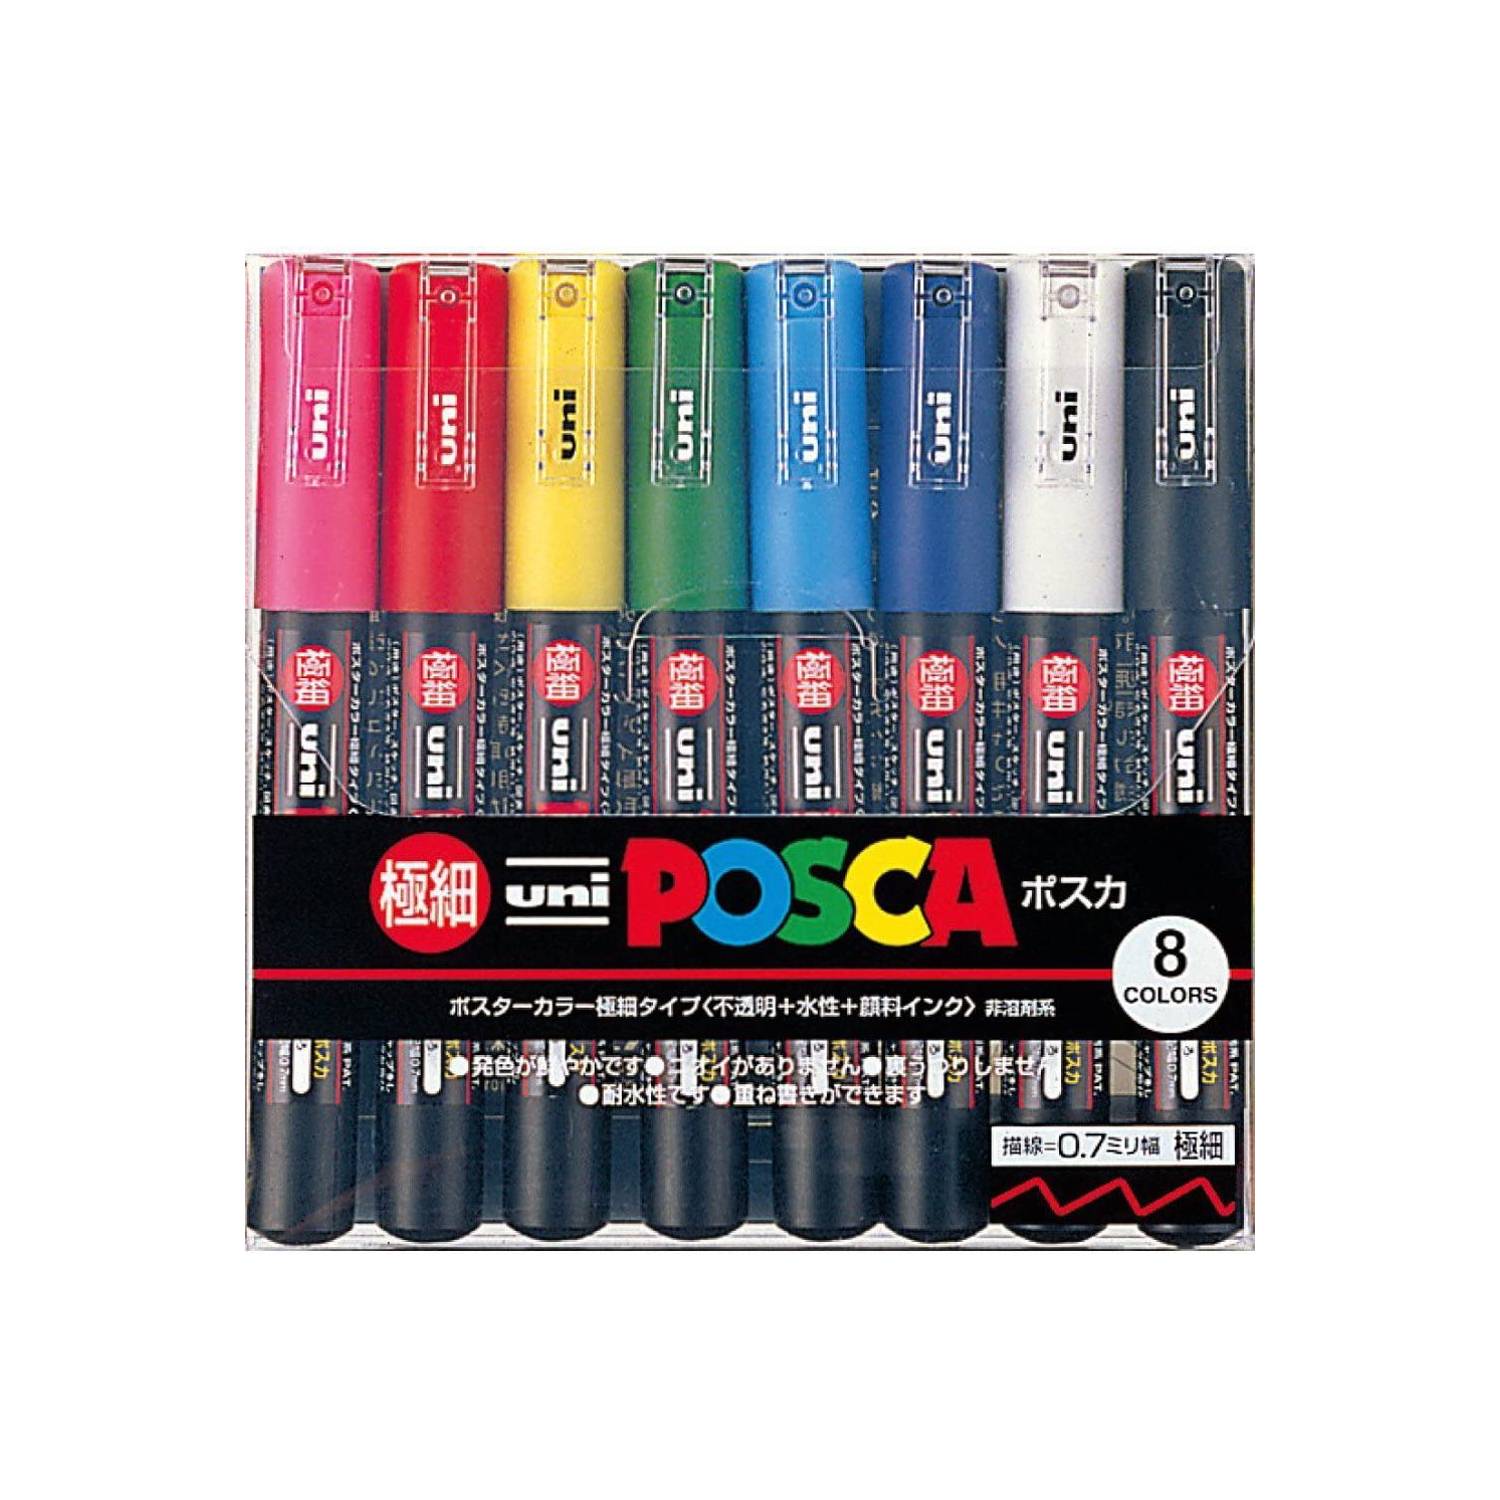 UNI POSCA Set Marcadores Posca 1M 8 Colores Original Japonés - PC 1M8C